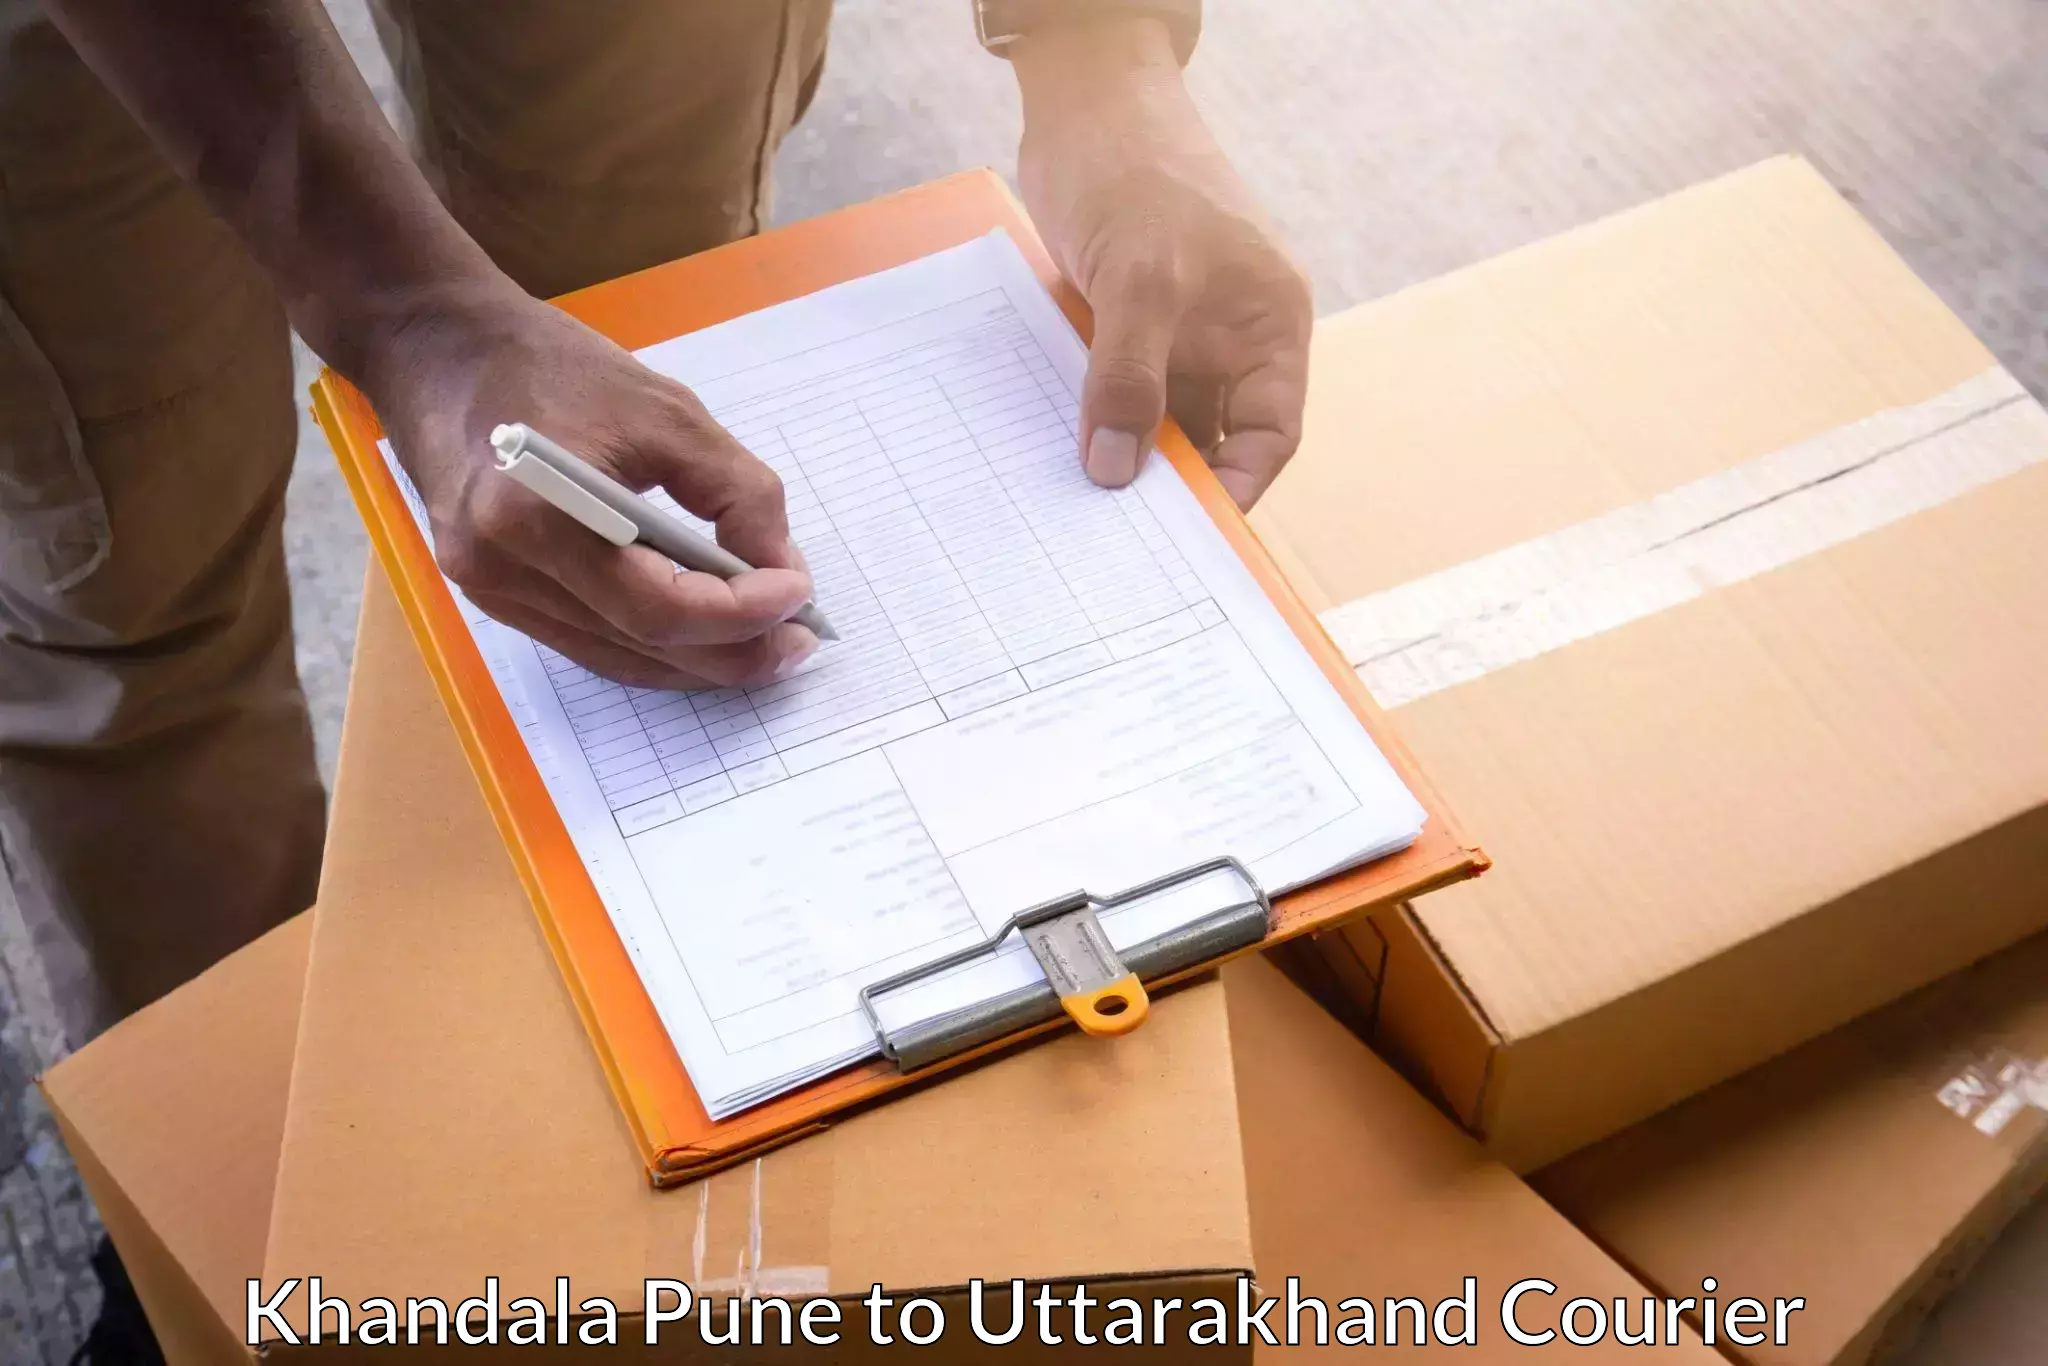 Custom courier packaging Khandala Pune to Tehri